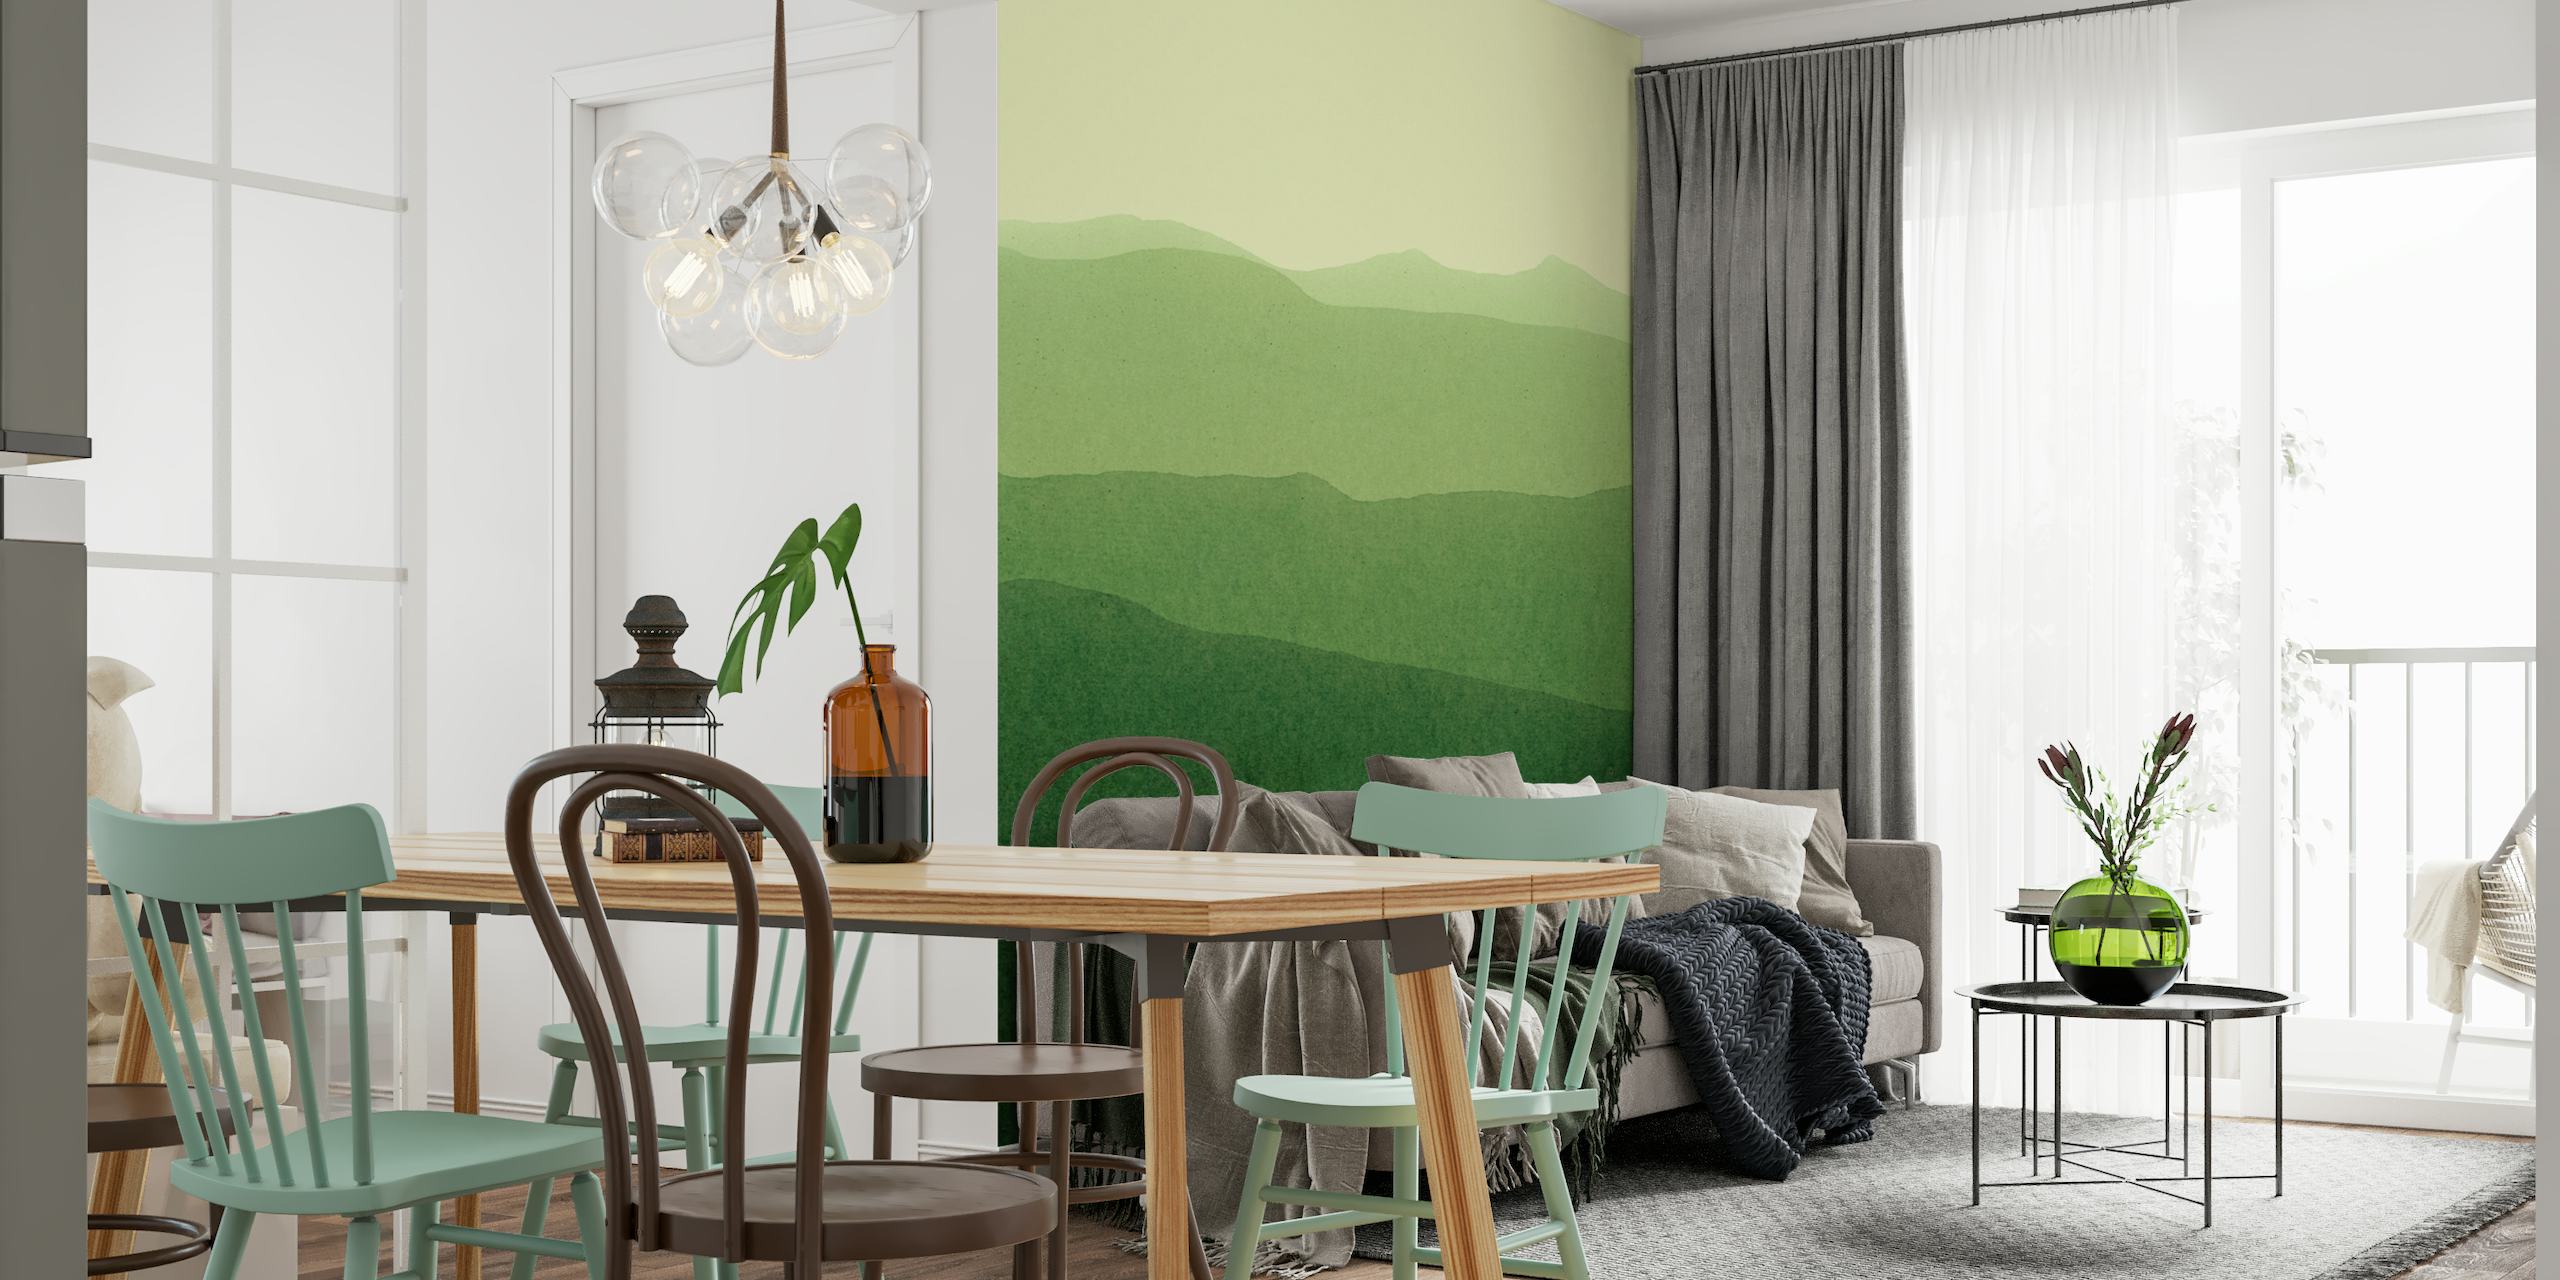 Stilizirani zeleni gradijent pejzažni zidni mural koji prikazuje valovita brda